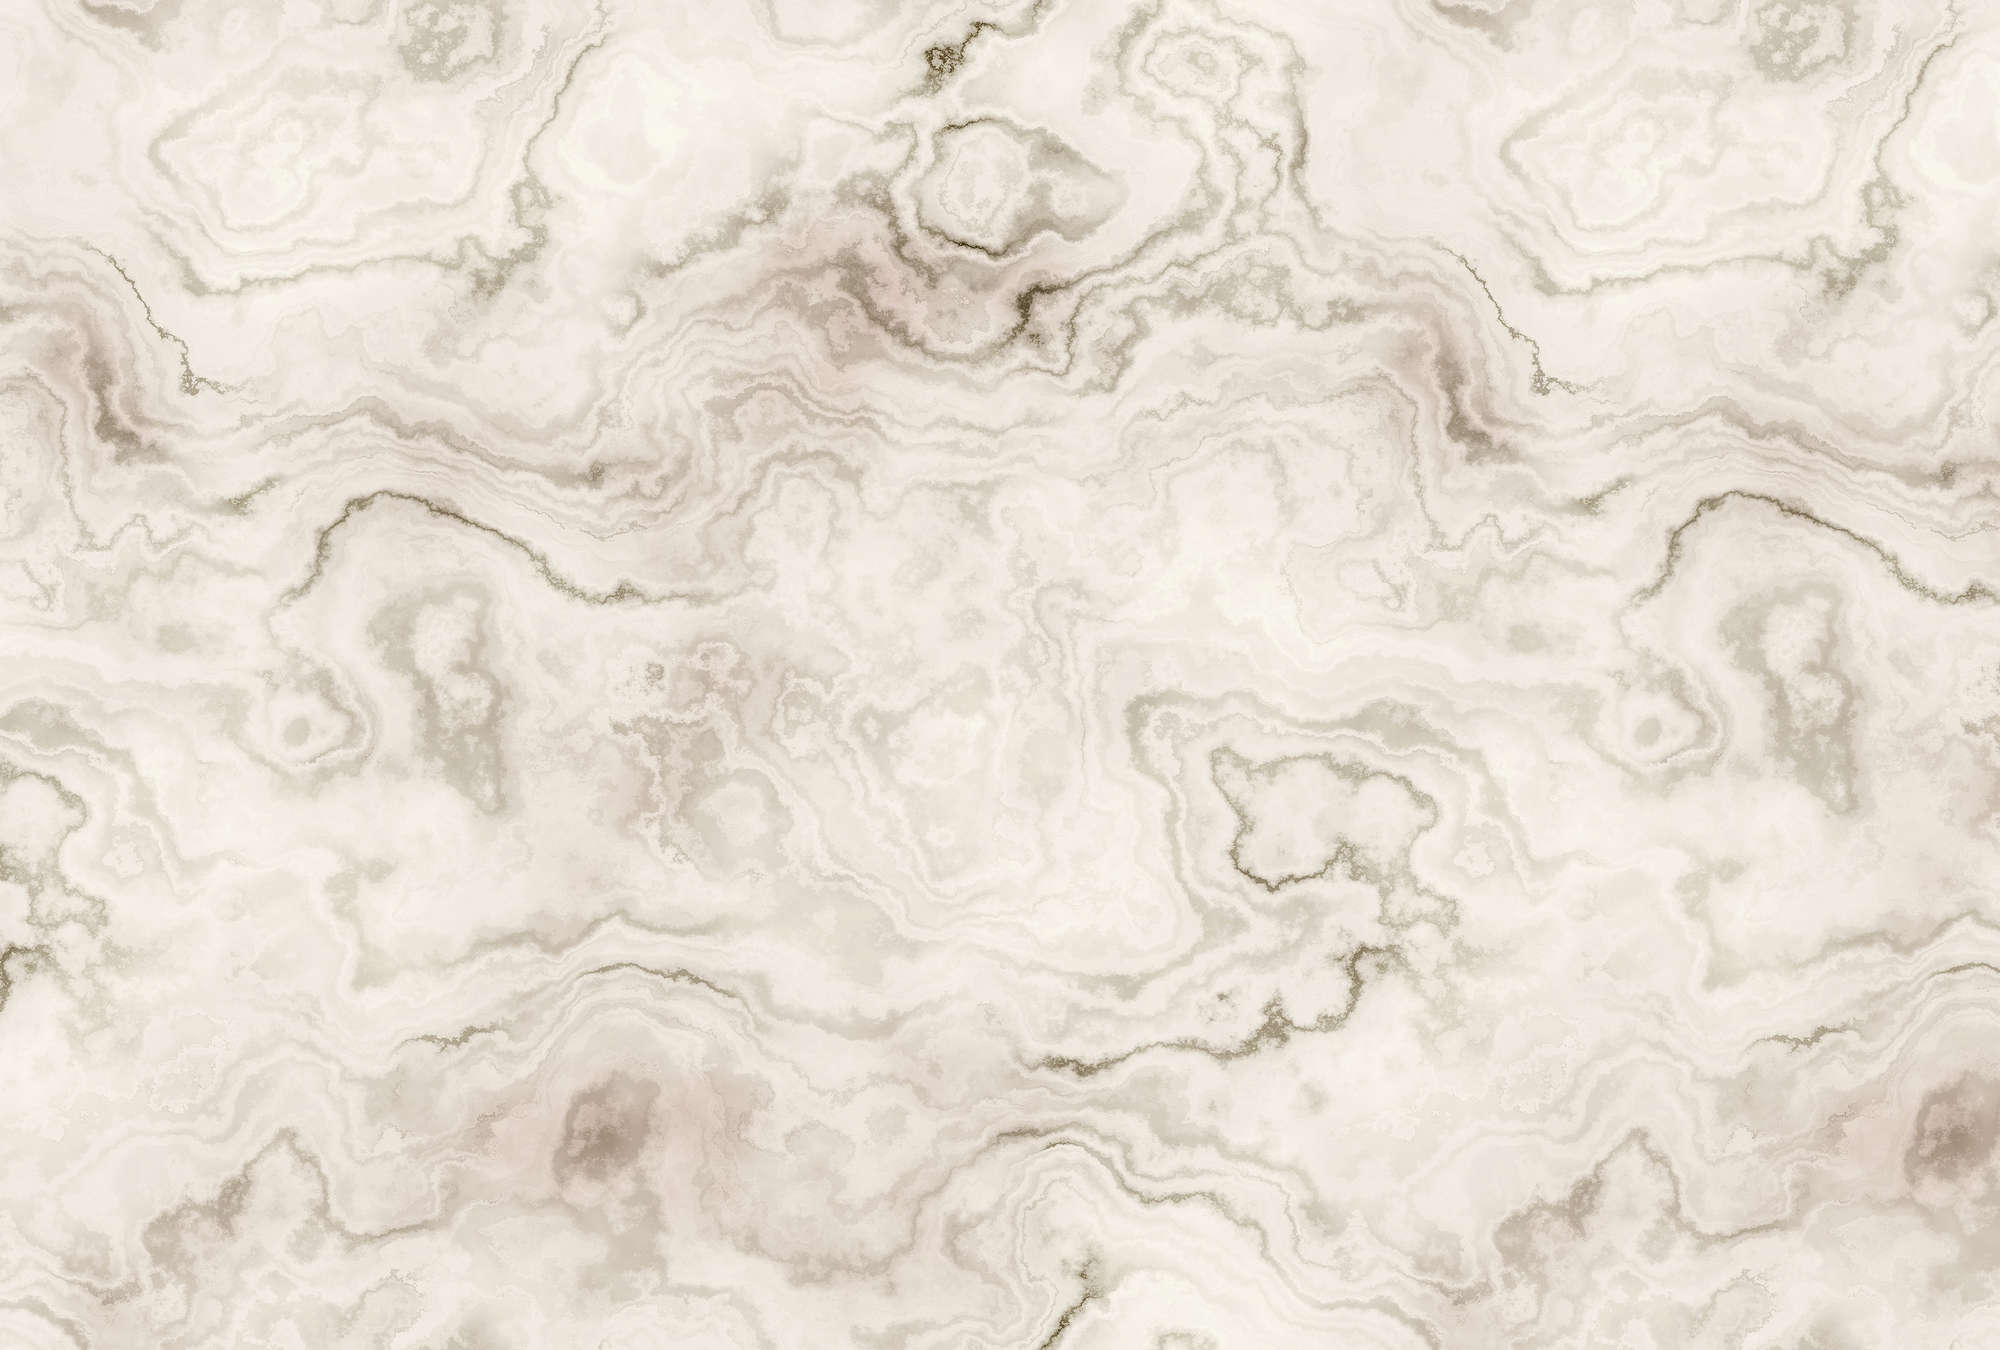             Carrara 2 - Fototapete in eleganter Marmoroptik – Beige, Braun | Premium Glattvlies
        